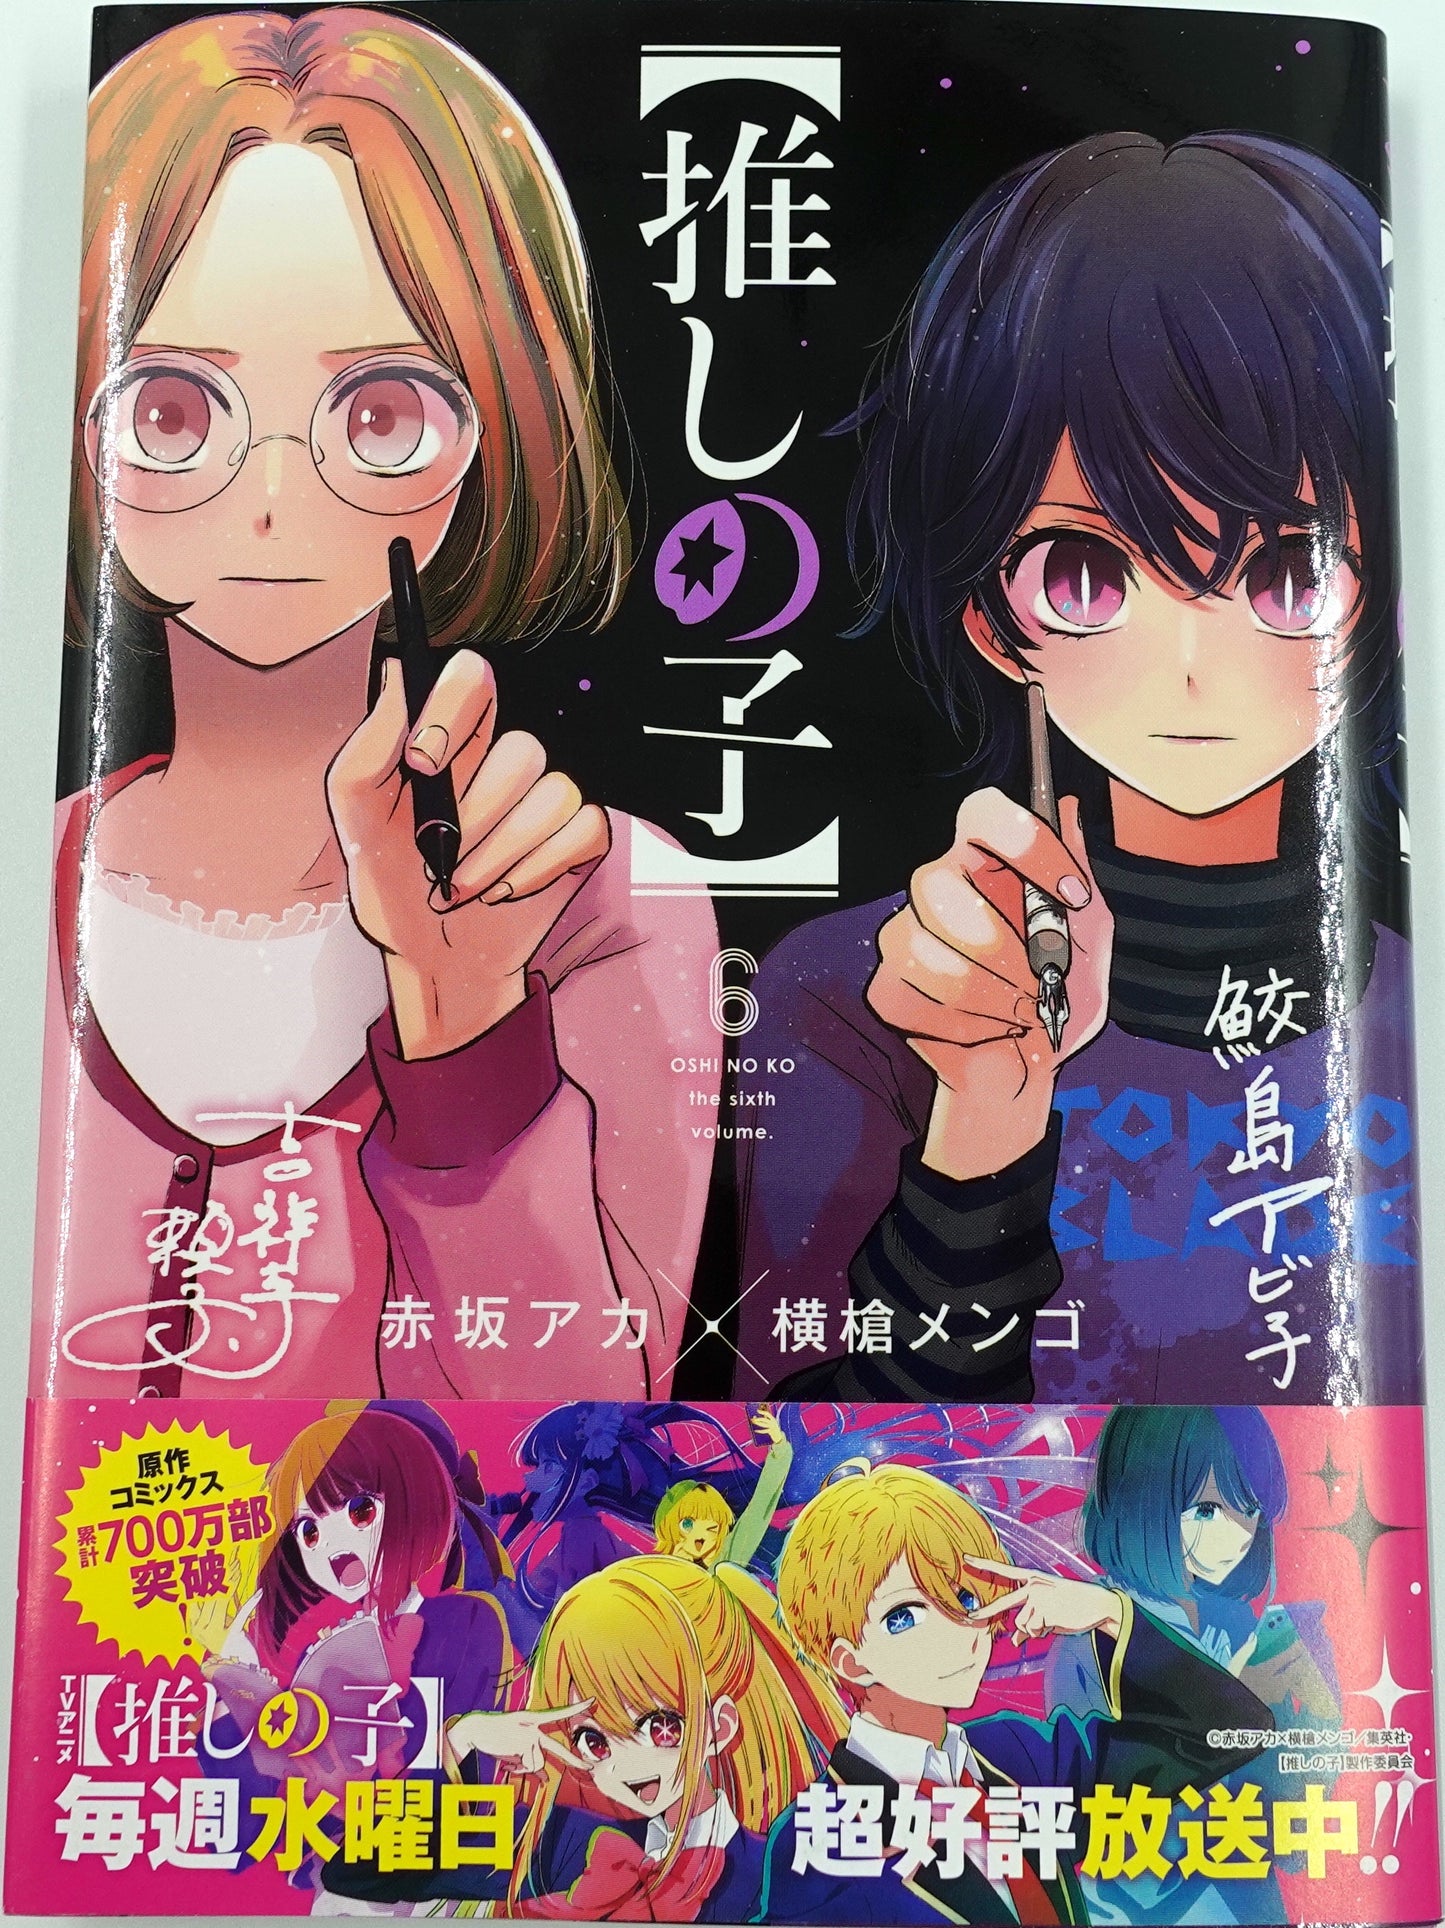 Oshinoko Vol.6 - Official Japanese Edition